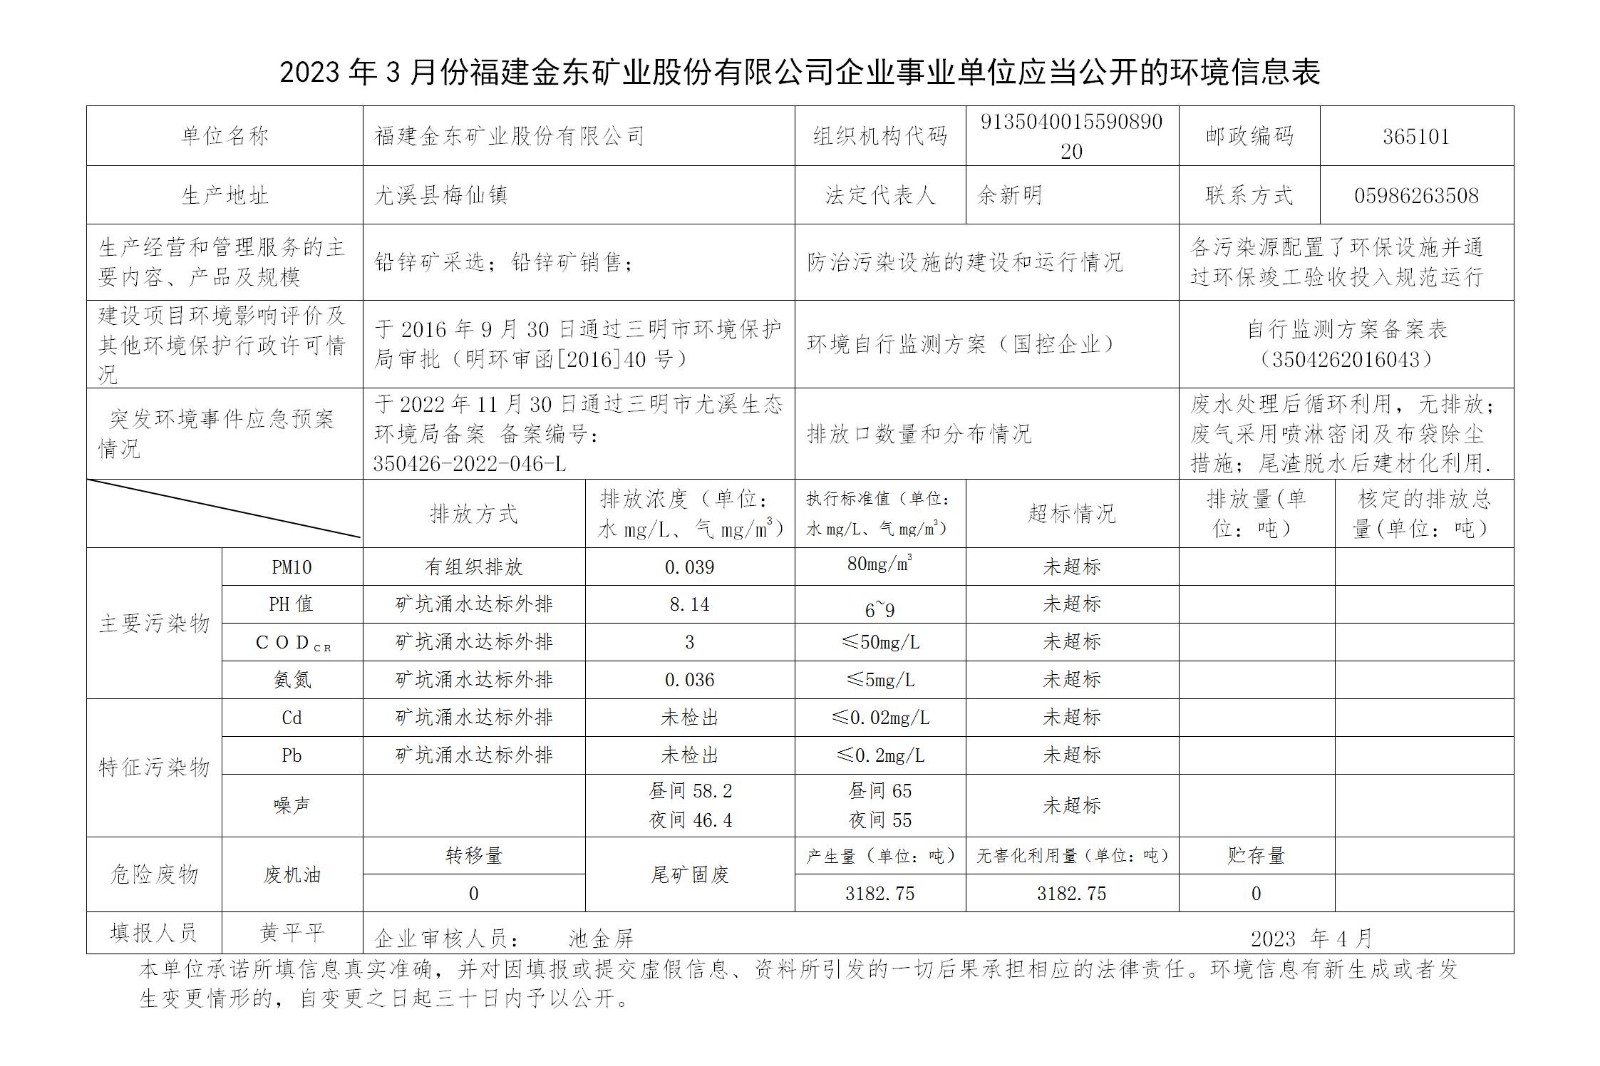 2023年3月份半岛官网(中国)企业事业单位应当公开的环境信息表_01.jpg